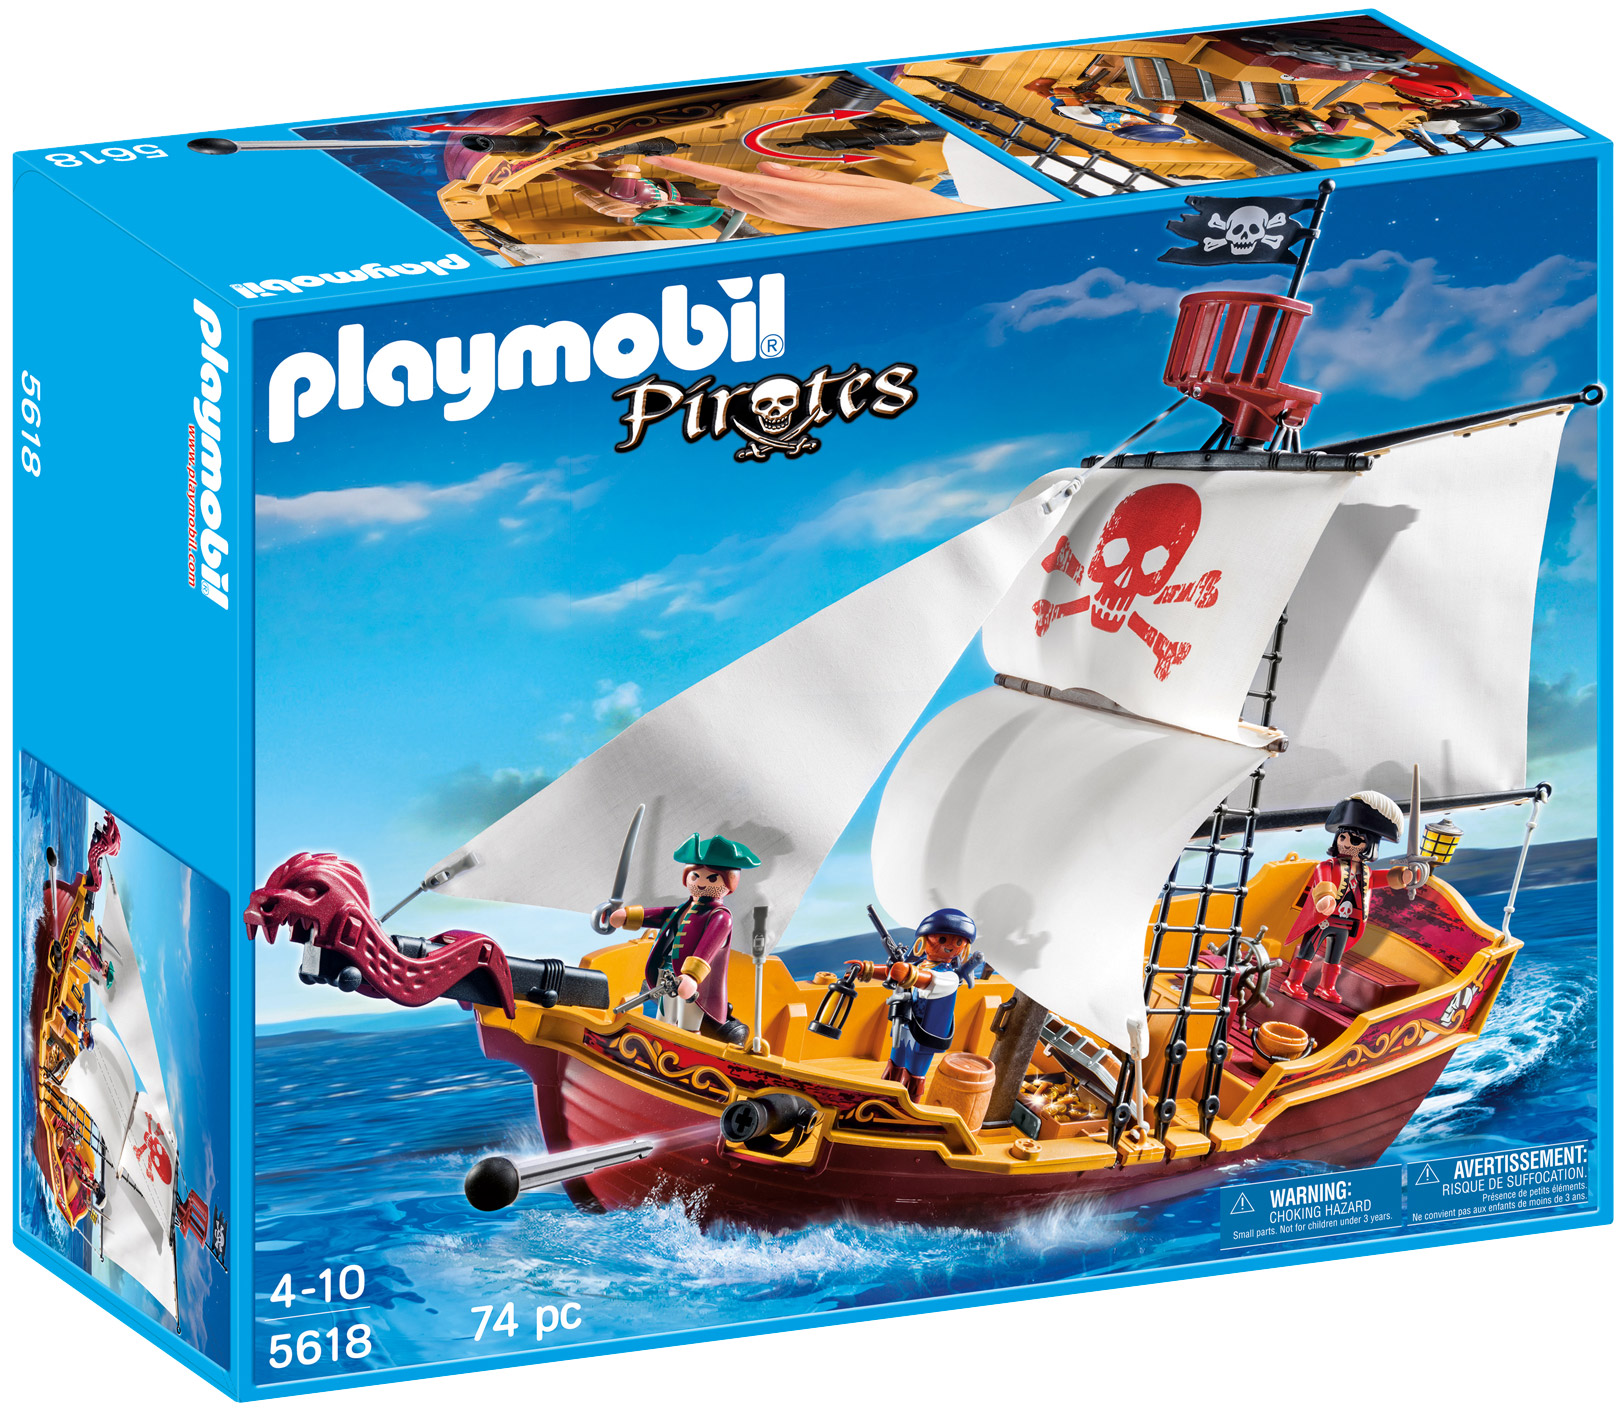 playmobil pirates 5618 pas cher - le bateau de pirates du